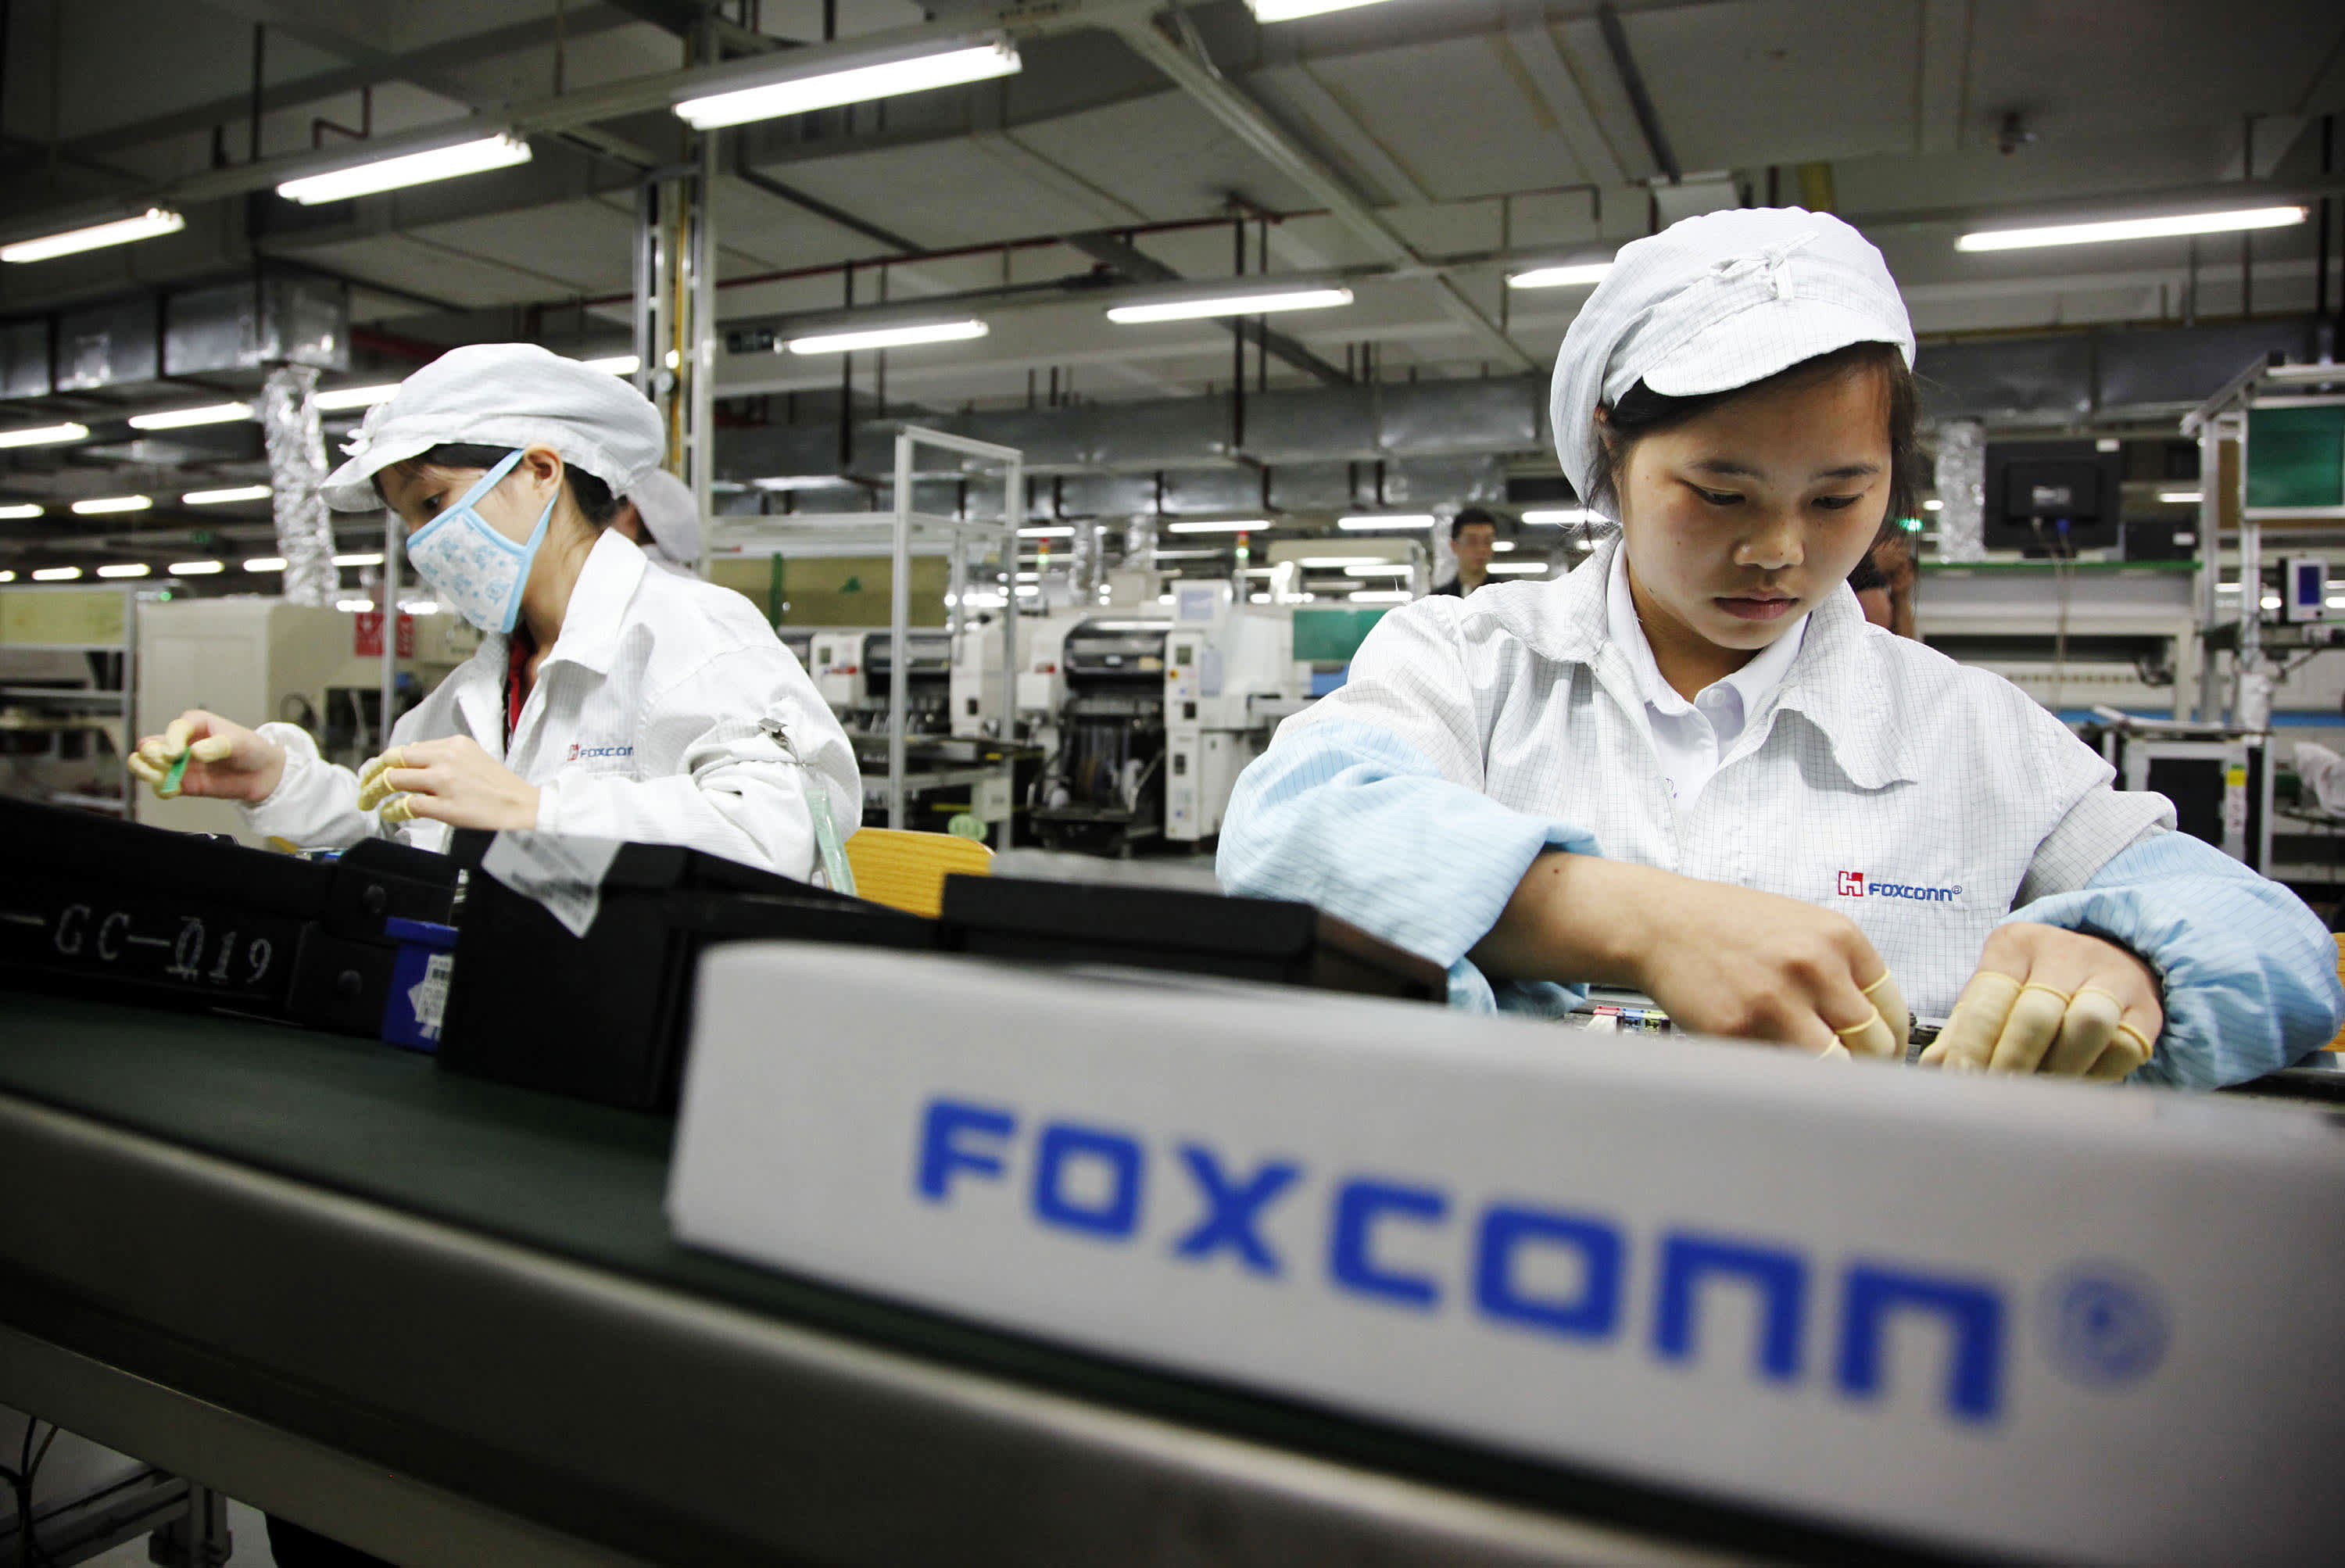 Migliaia di dipendenti licenziati dalla più grande fabbrica di Foxconn, le spedizioni di iPhone sono a rischio